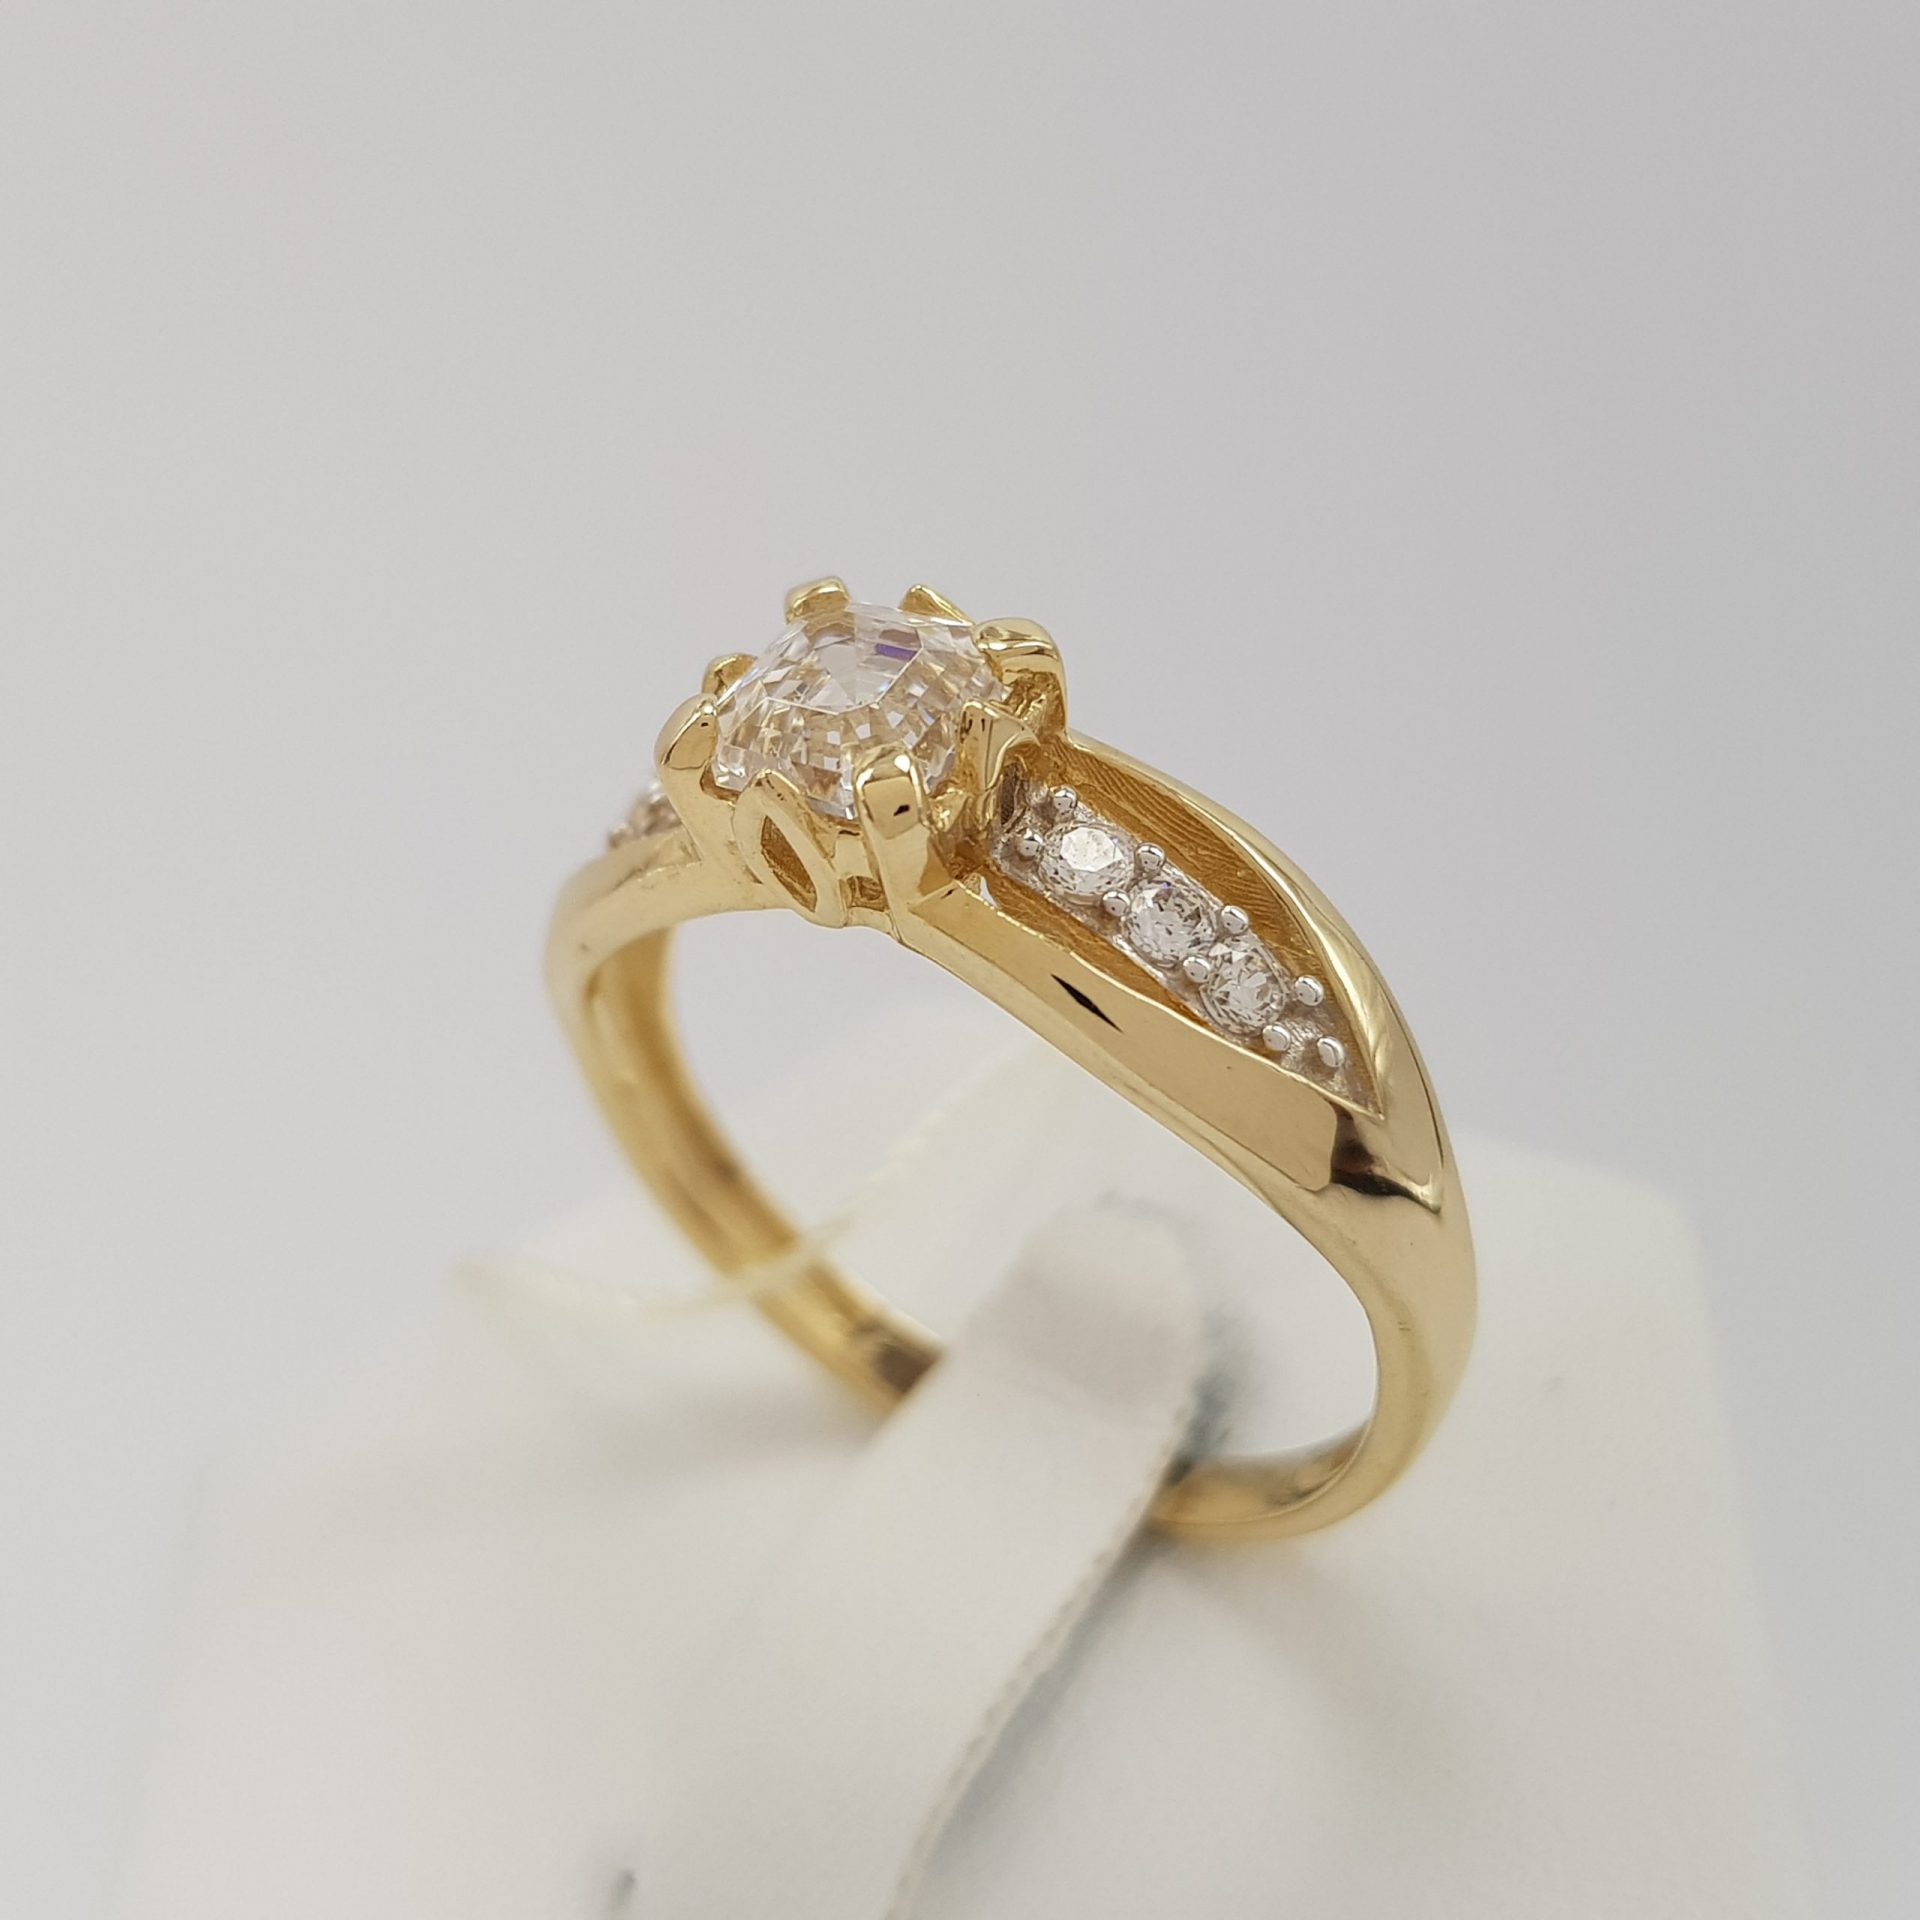 Masywny pierścionek złoty z niespotykaną cyrkonią w szlifie szmaragdowym